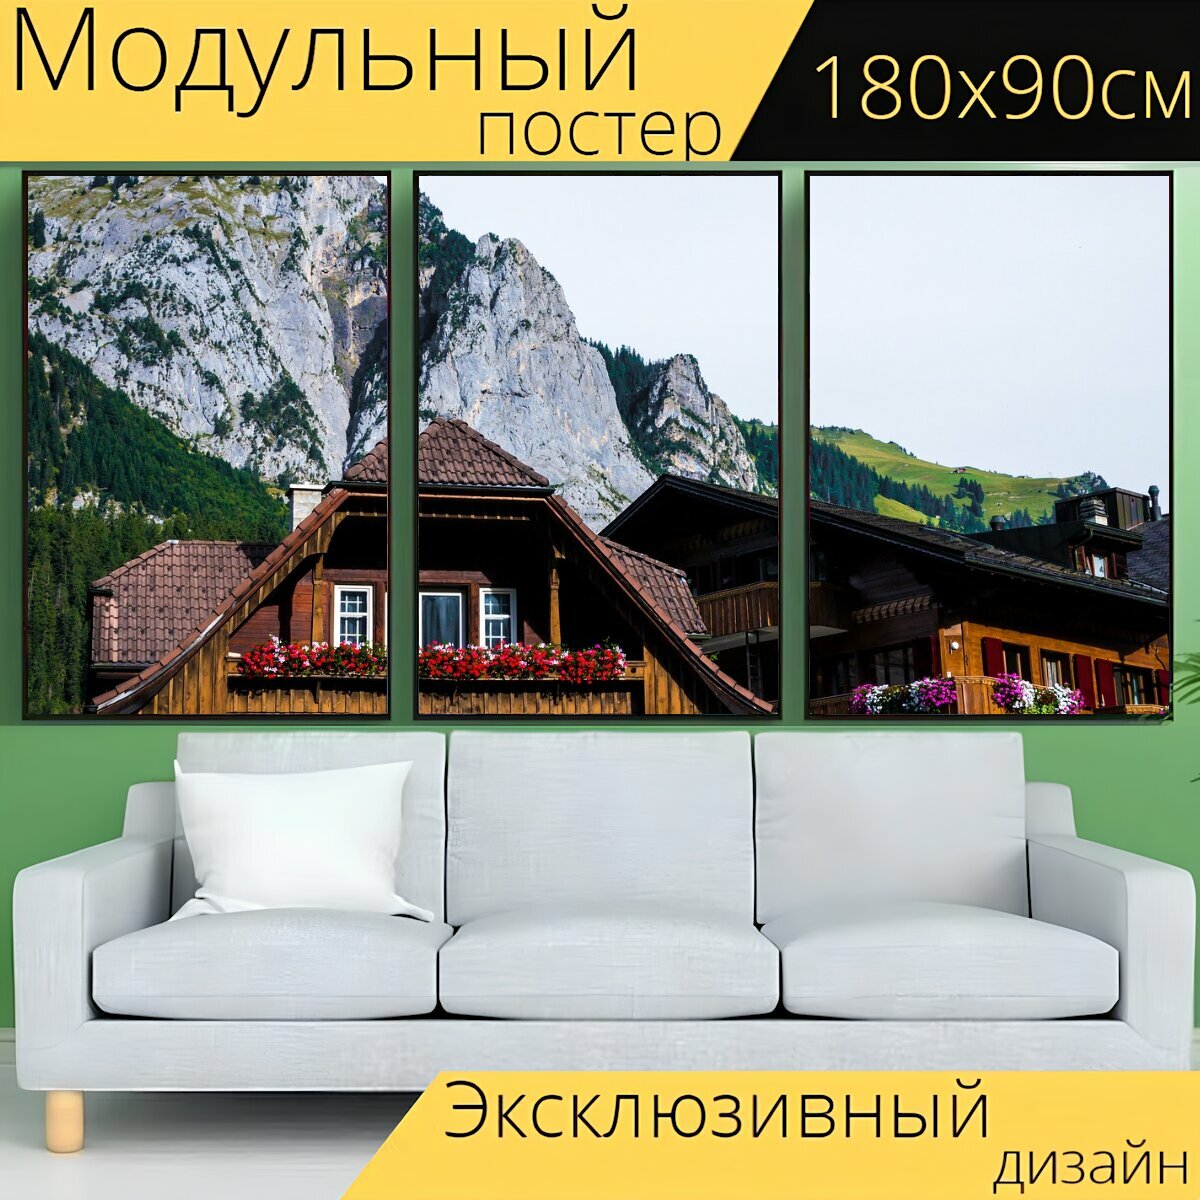 Модульный постер "Швейцарский фермерский дом, горы, шале" 180 x 90 см. для интерьера